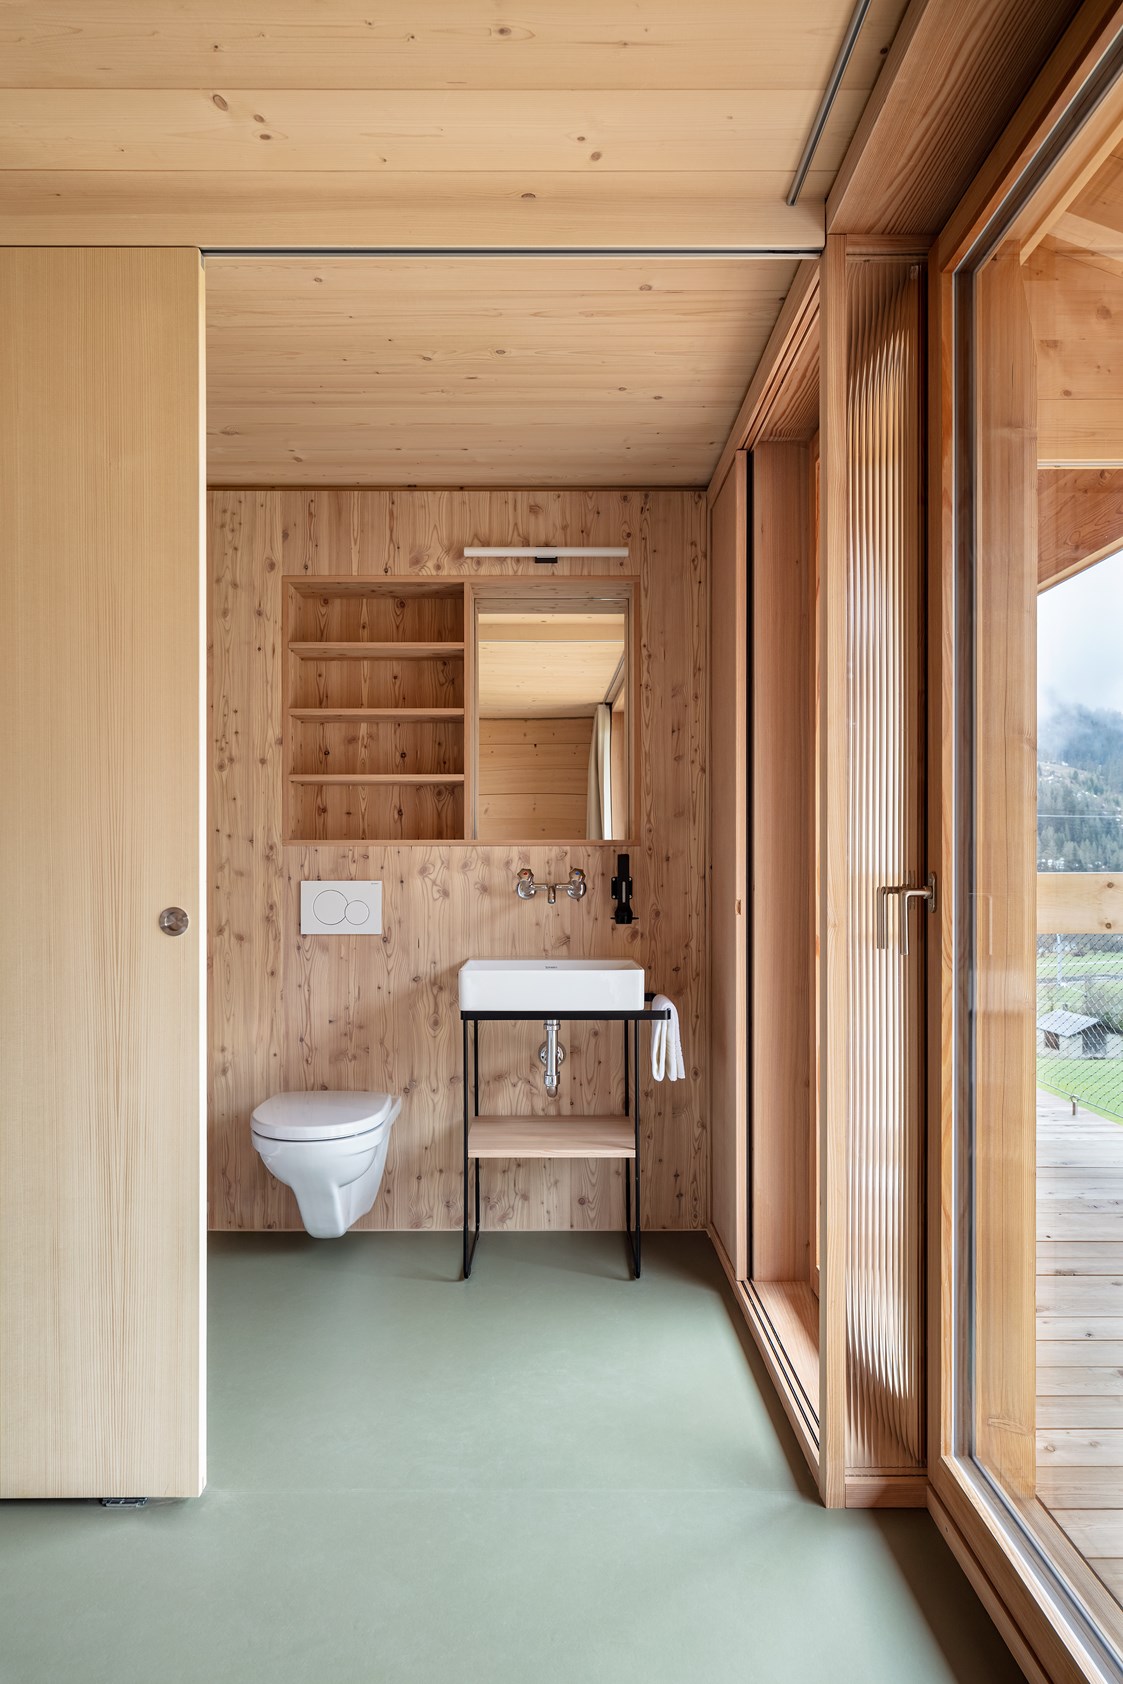 Biohotel: Jedes Zimmer mit WC/Dusche - Berglodge Goms